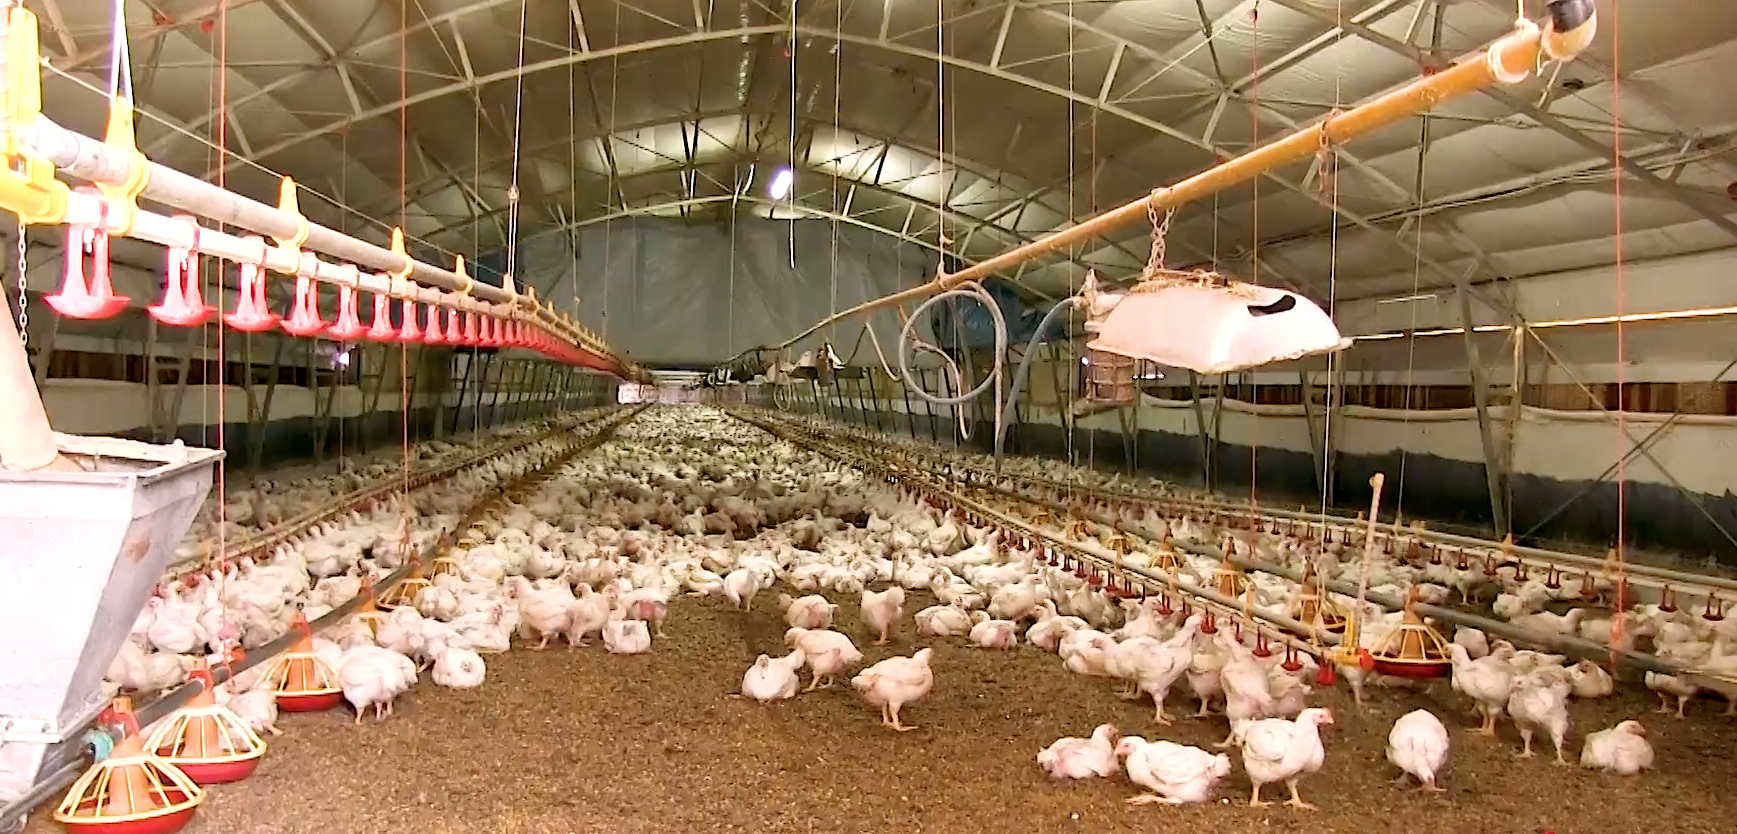 benessere animale, frame del video istituto zooprofilattico, allevamento galline